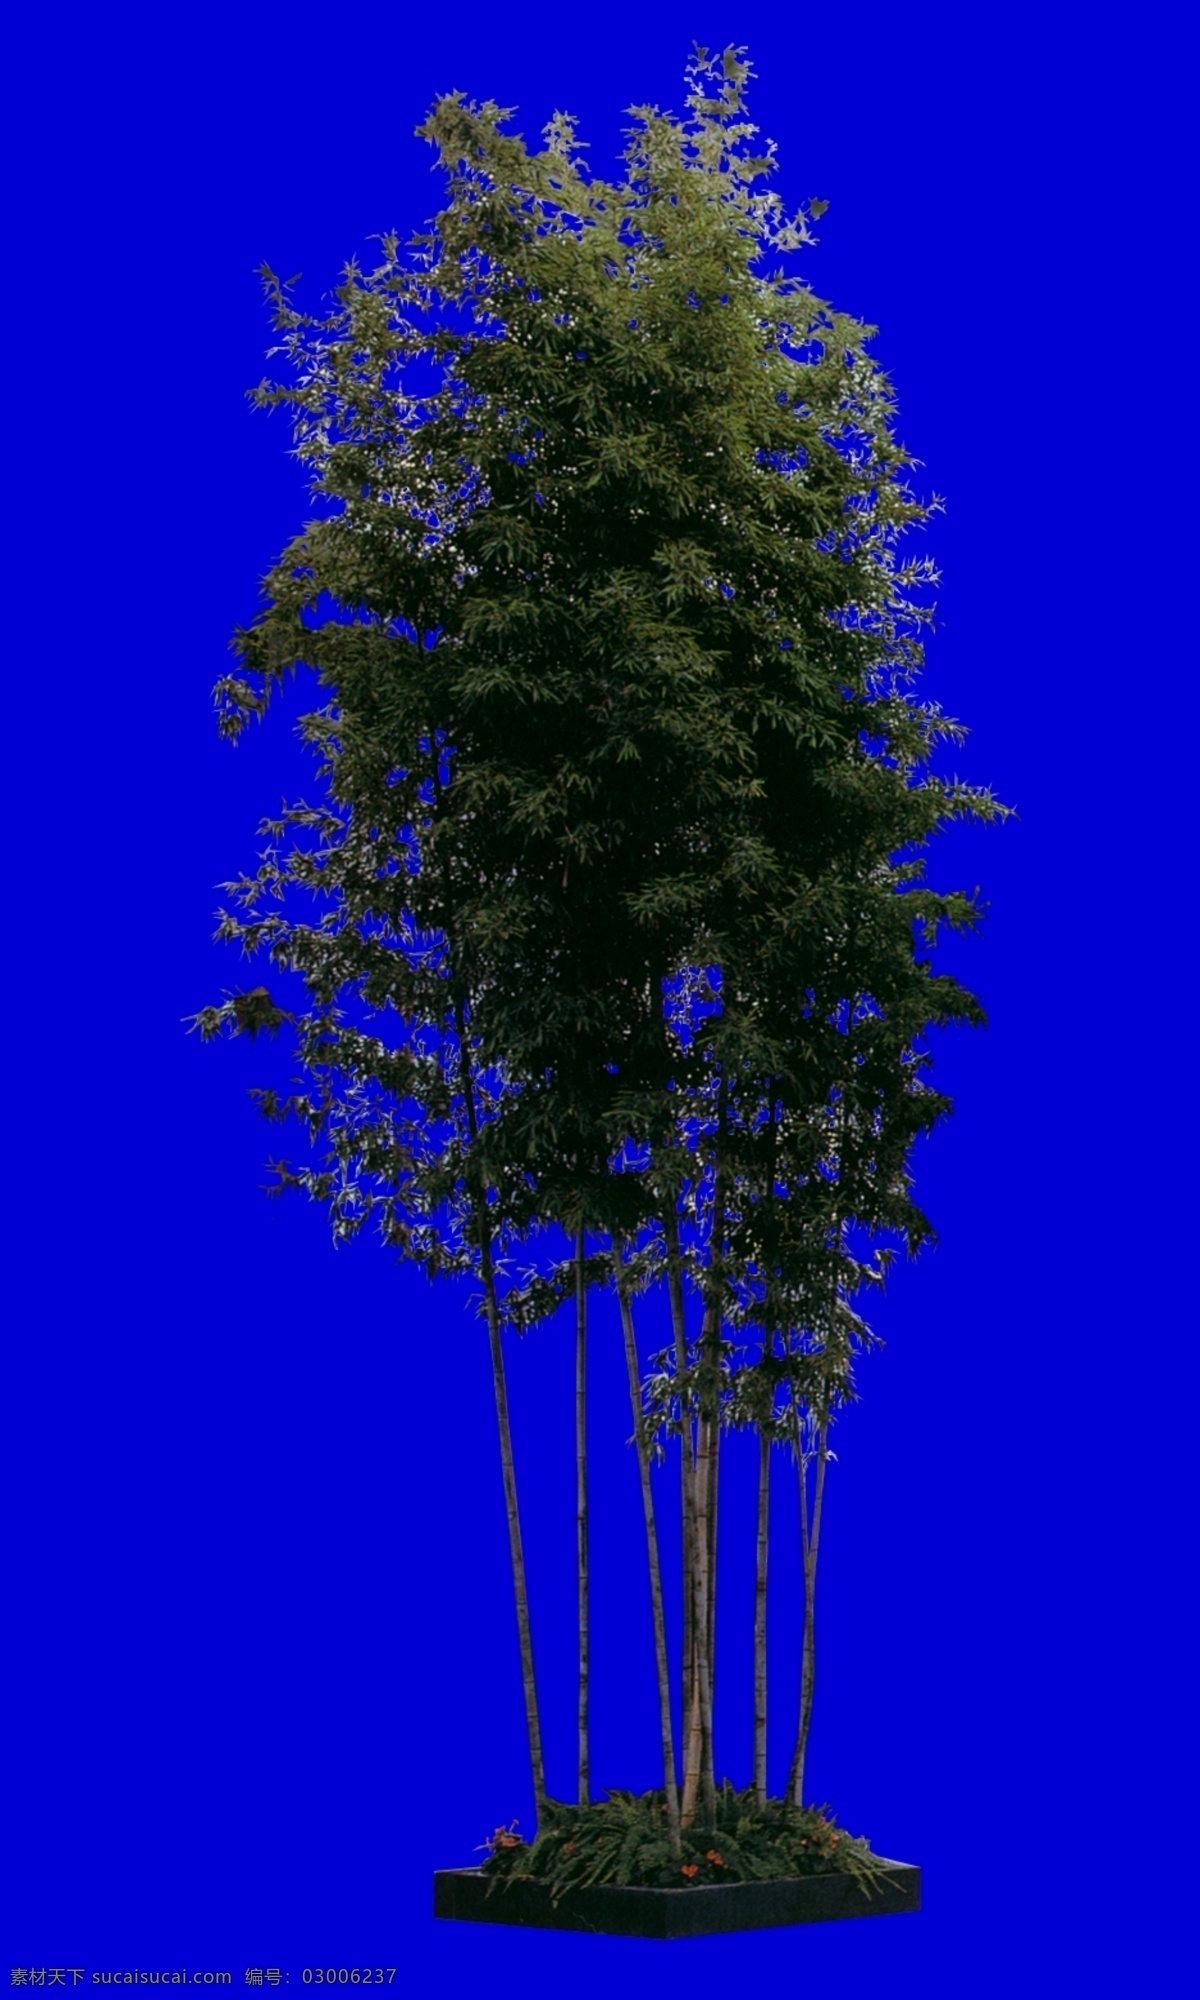 小树配景素材 小树 配景素材 园林植物 园林 建筑装饰 设计素材 tga 蓝色